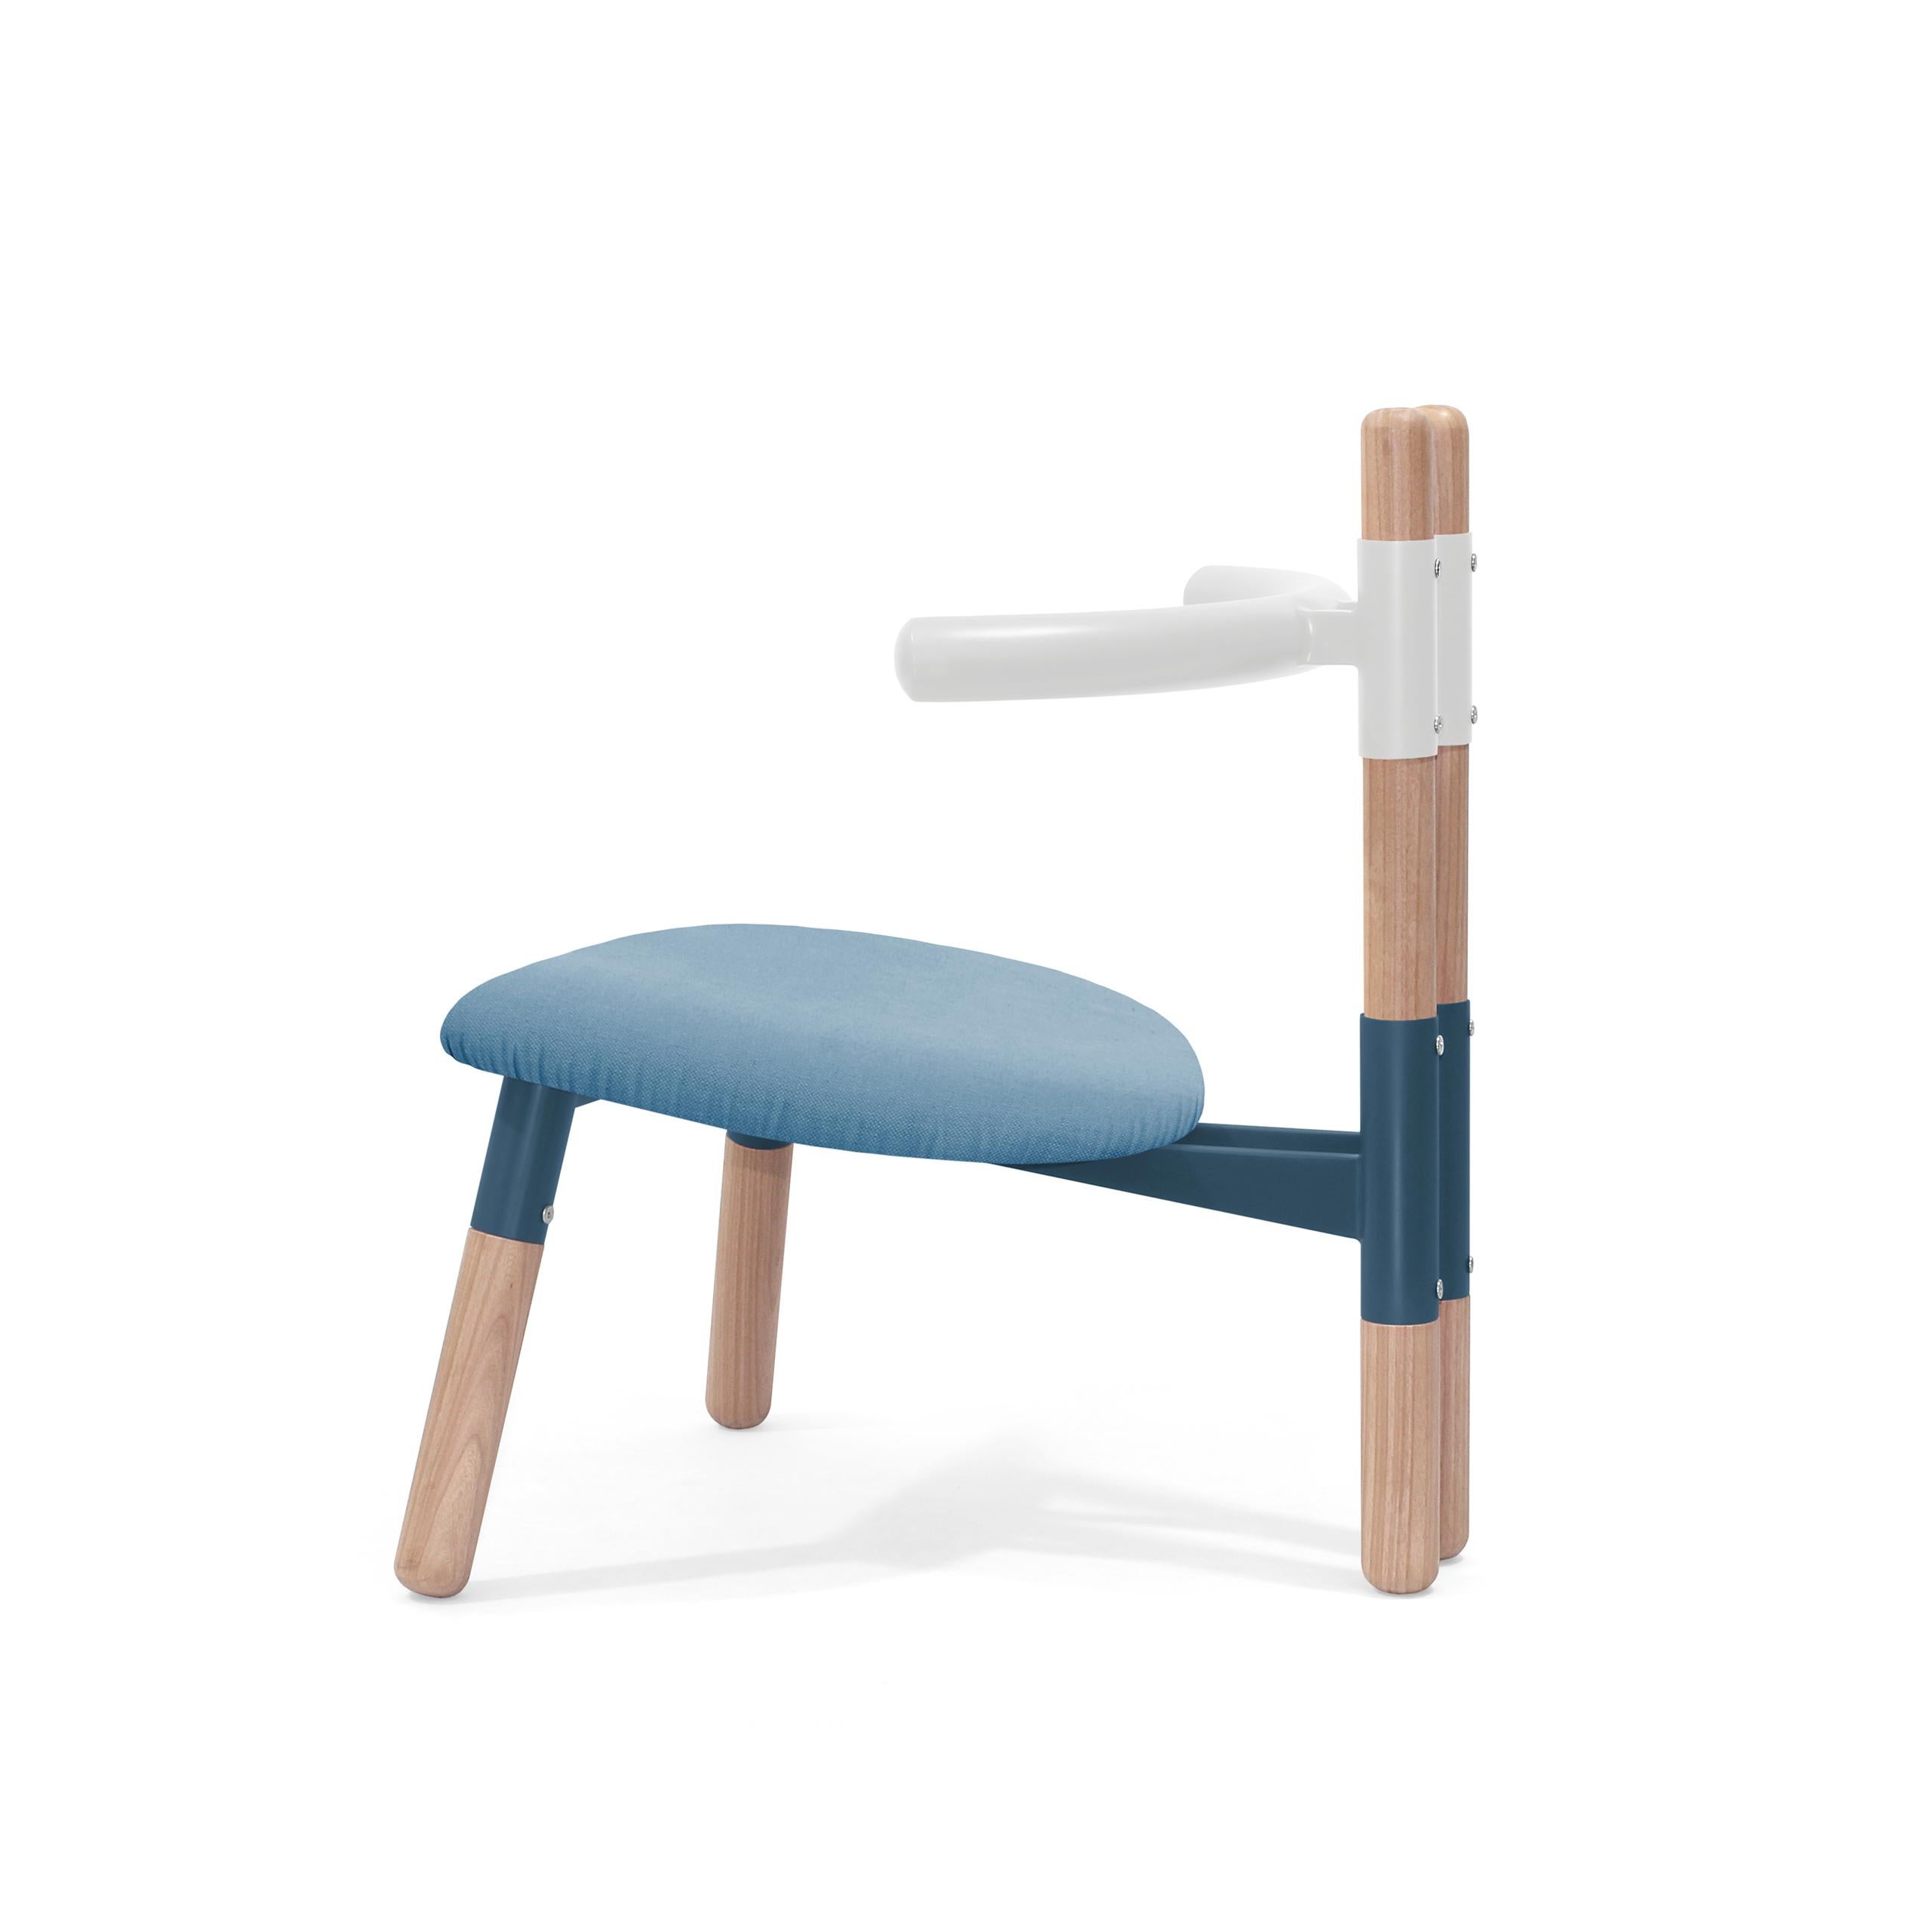 Der Sessel PK13 ist von den Holzbindern inspiriert, die bei der Konstruktion von Dächern verwendet werden.
Die Stuhlmuffen beziehen sich auf das 